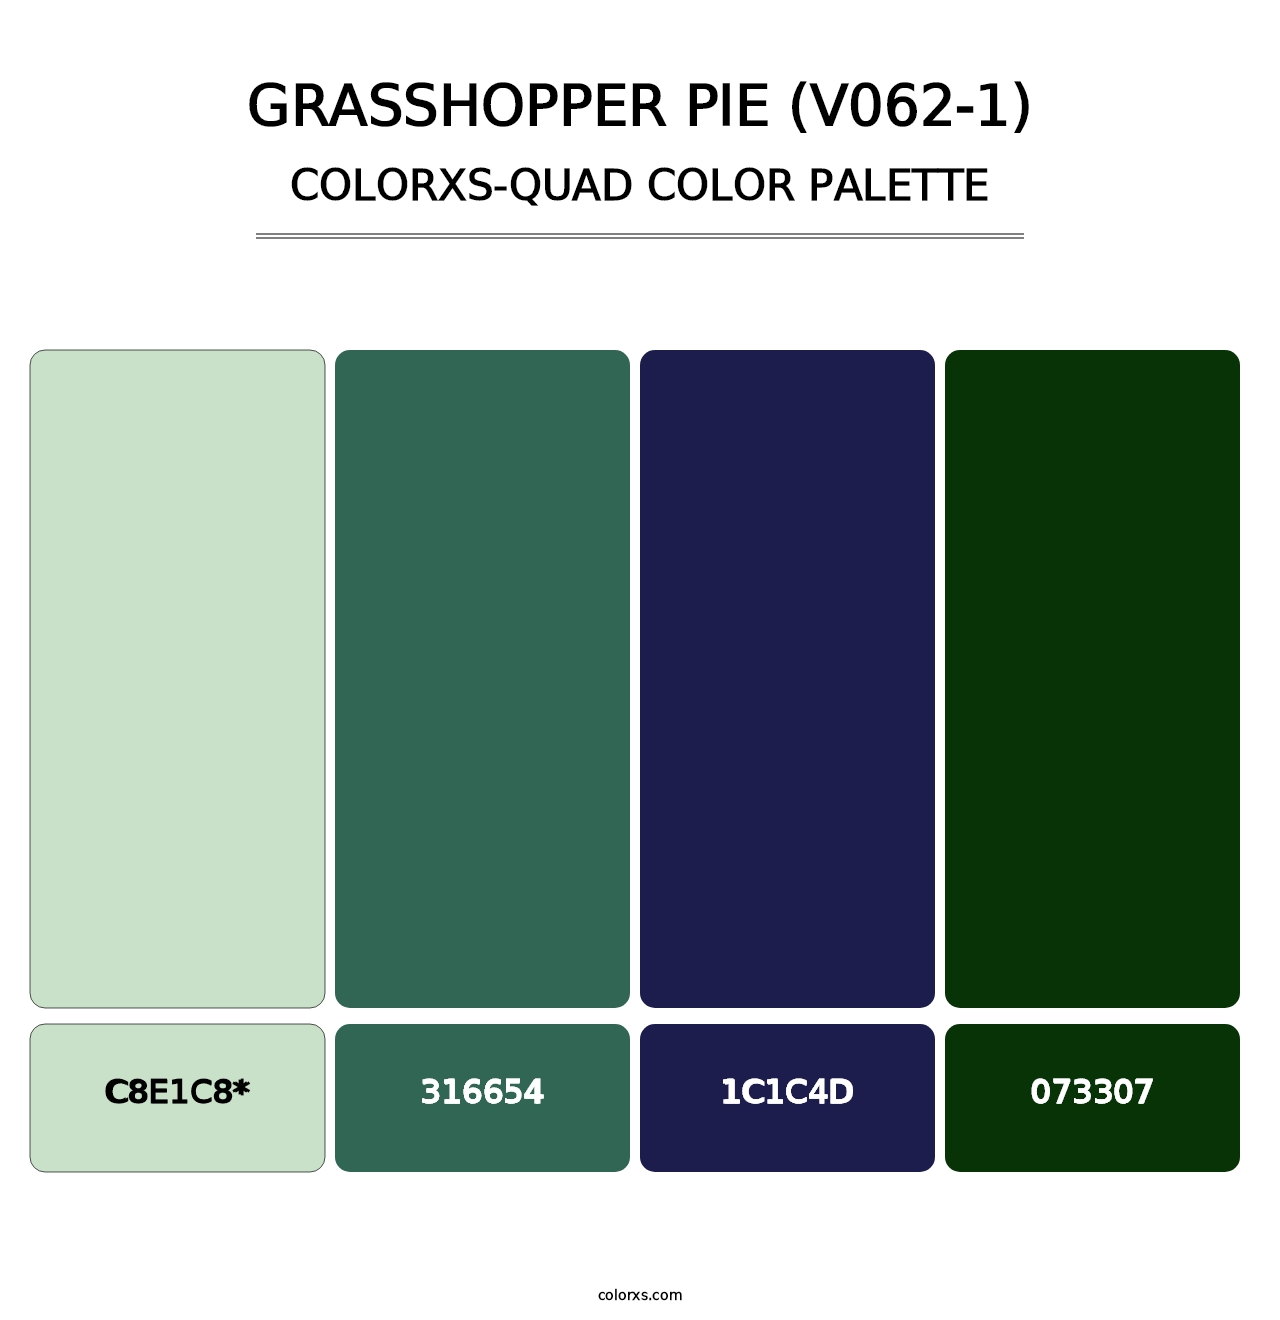 Grasshopper Pie (V062-1) - Colorxs Quad Palette